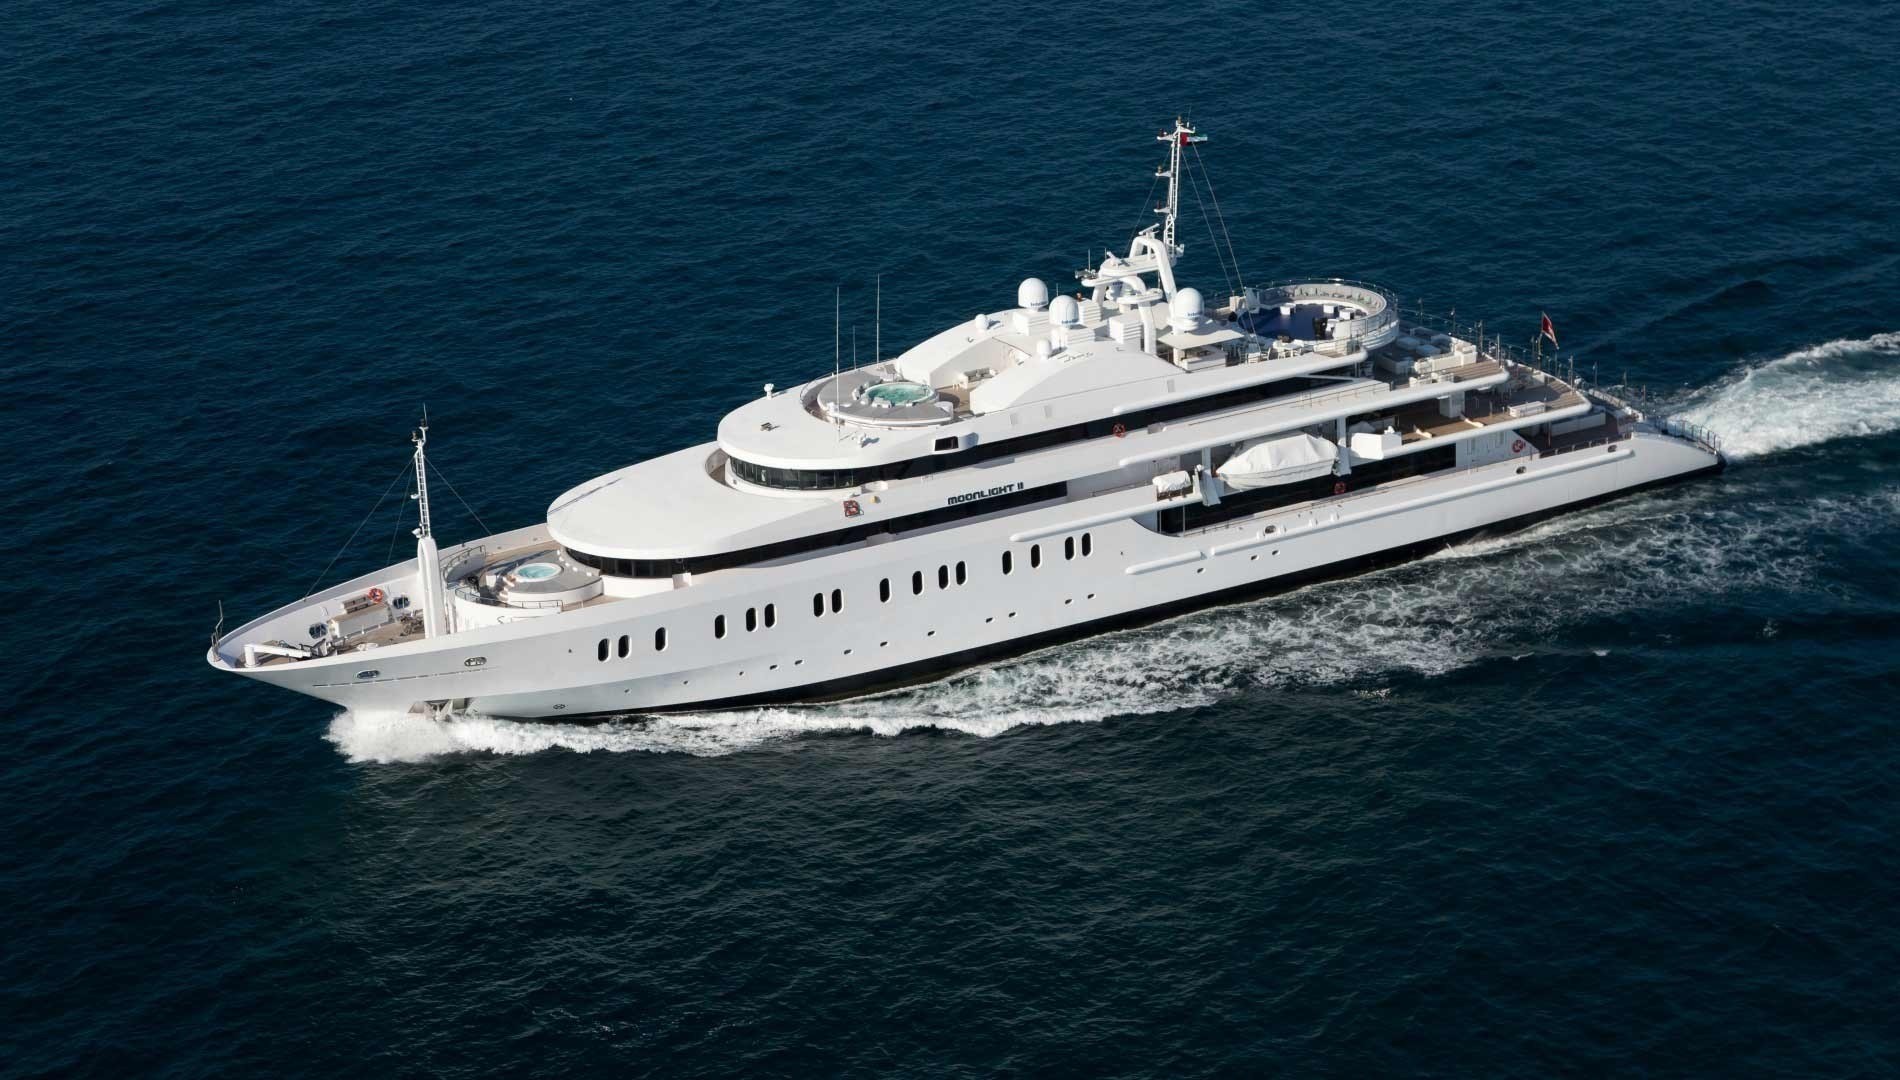 Moonlight II Yacht Charter Details, Superyacht Charter | CHARTERWORLD ...